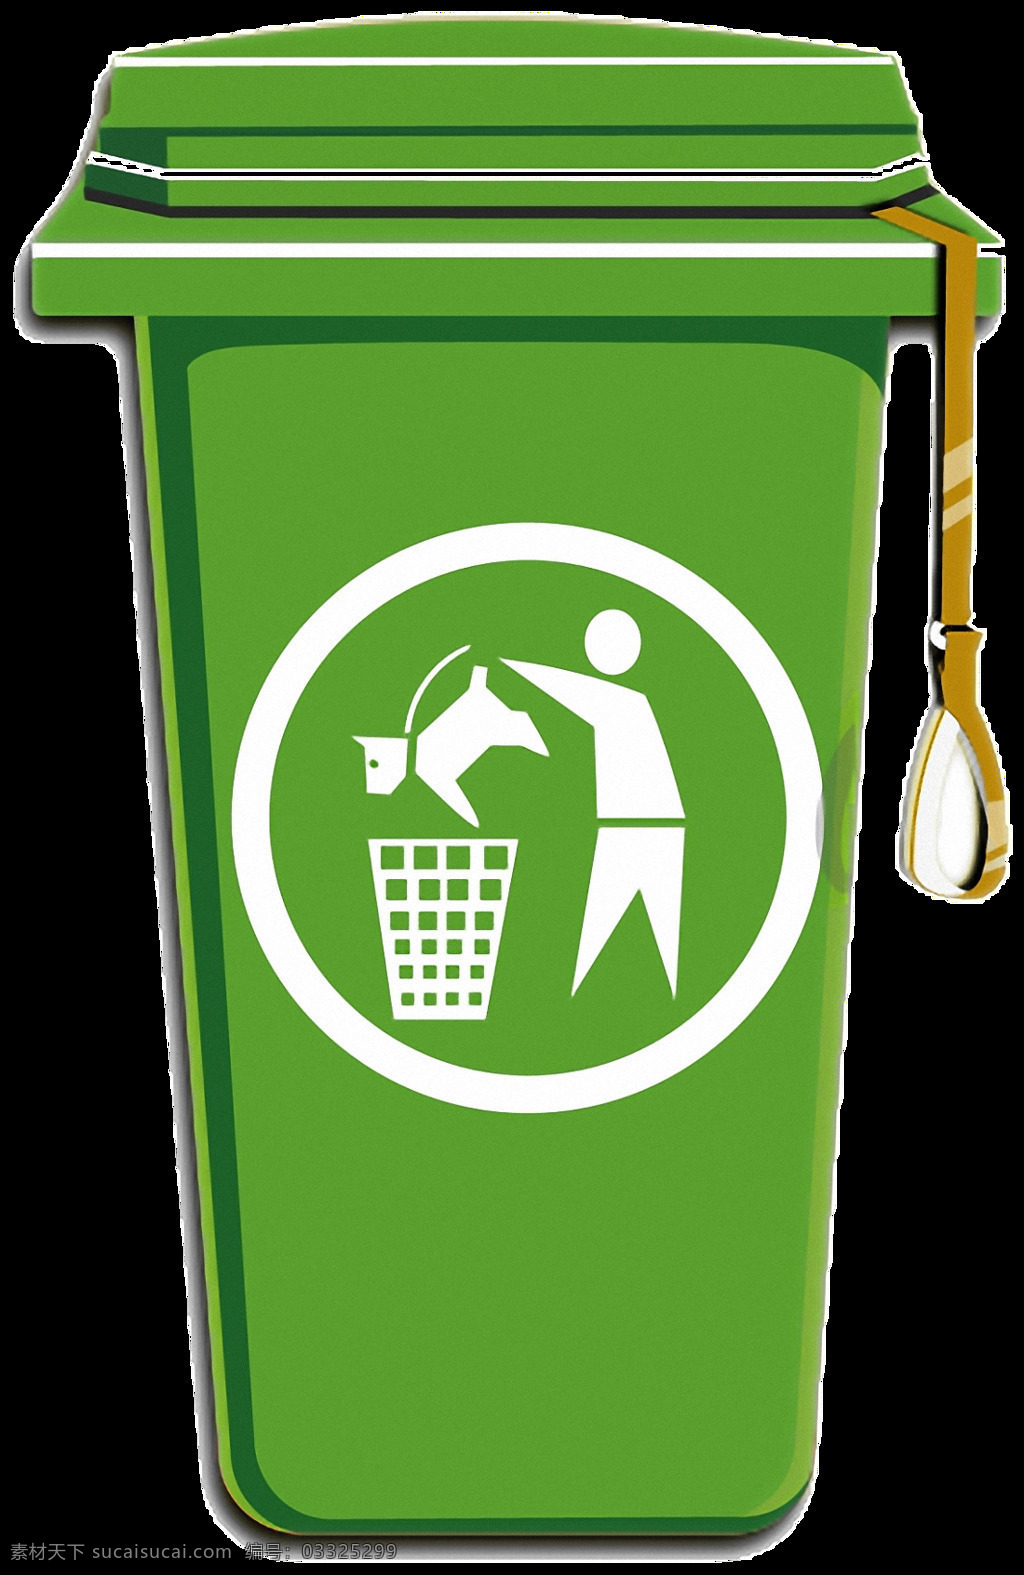 绿色 塑料 垃圾桶 免 抠 透明 图 层 户外 创意 家用 圆垃圾桶 铁垃圾桶 家用垃圾桶 金属垃圾桶 塑料垃圾篓 不锈钢垃圾篓 金属垃圾篓